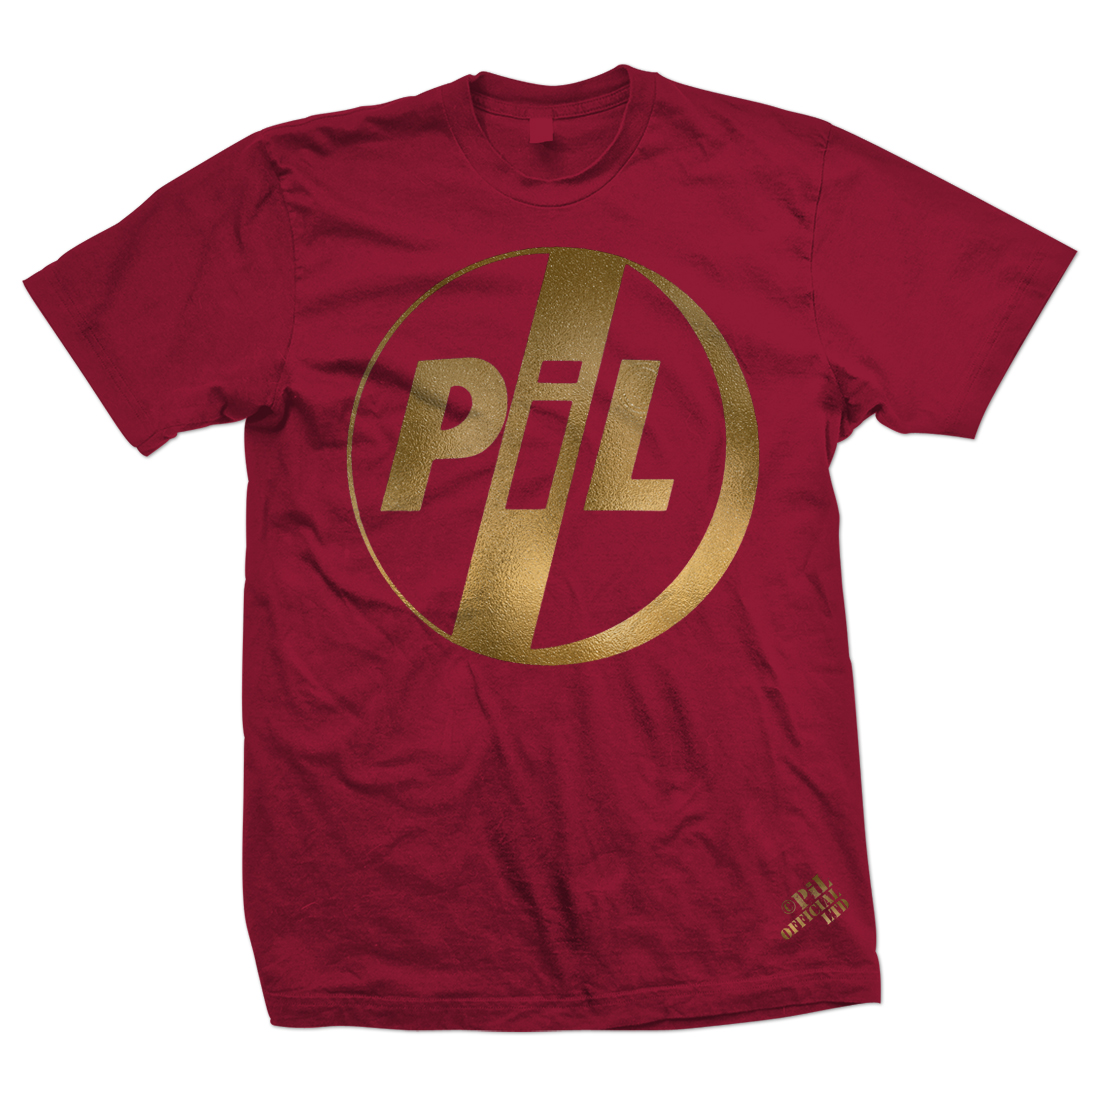 New PiL Gold foil t-shirts now on sale via the official PiL webstore